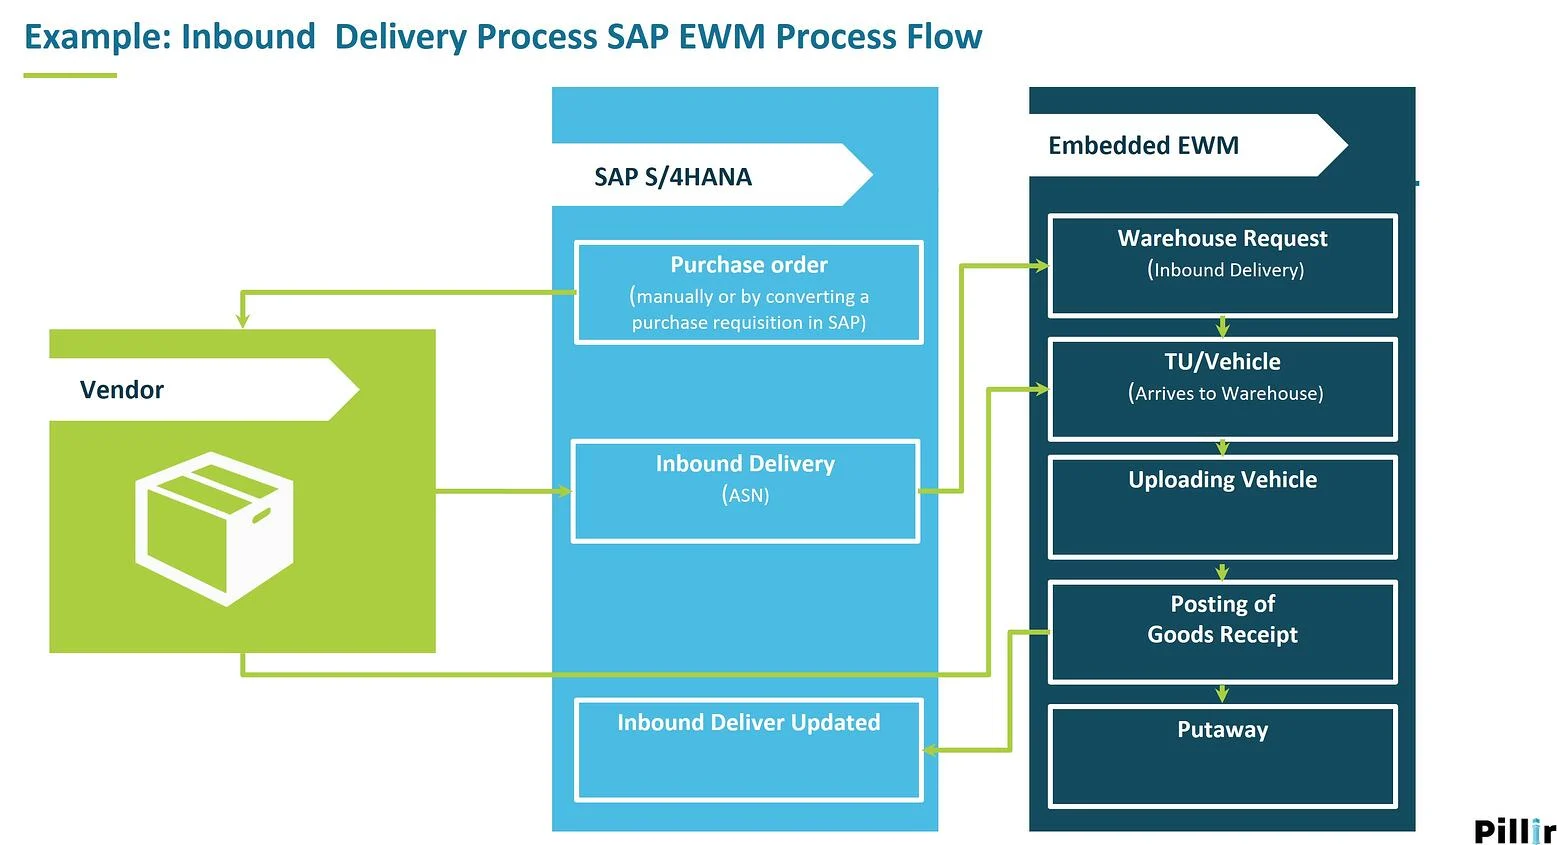 A diagram showing the SAP EWM process flow